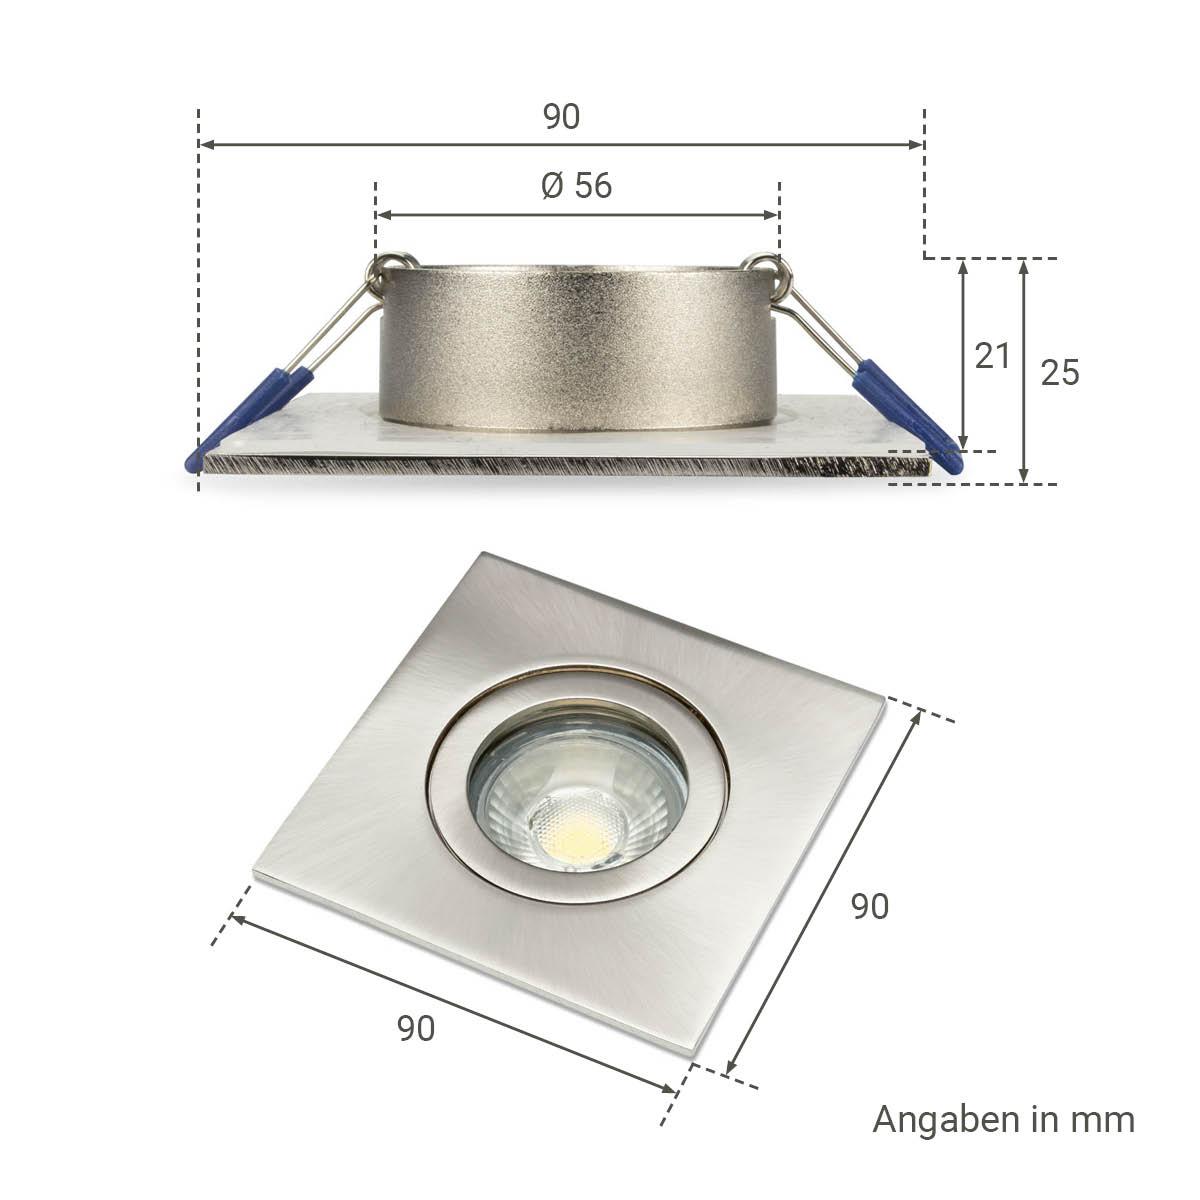 Einbauspot IP44 eckig - Farbe:  Edelstahl-gebürstet - LED Leuchtmittel:  GU10 5W warmweiß dimmbar